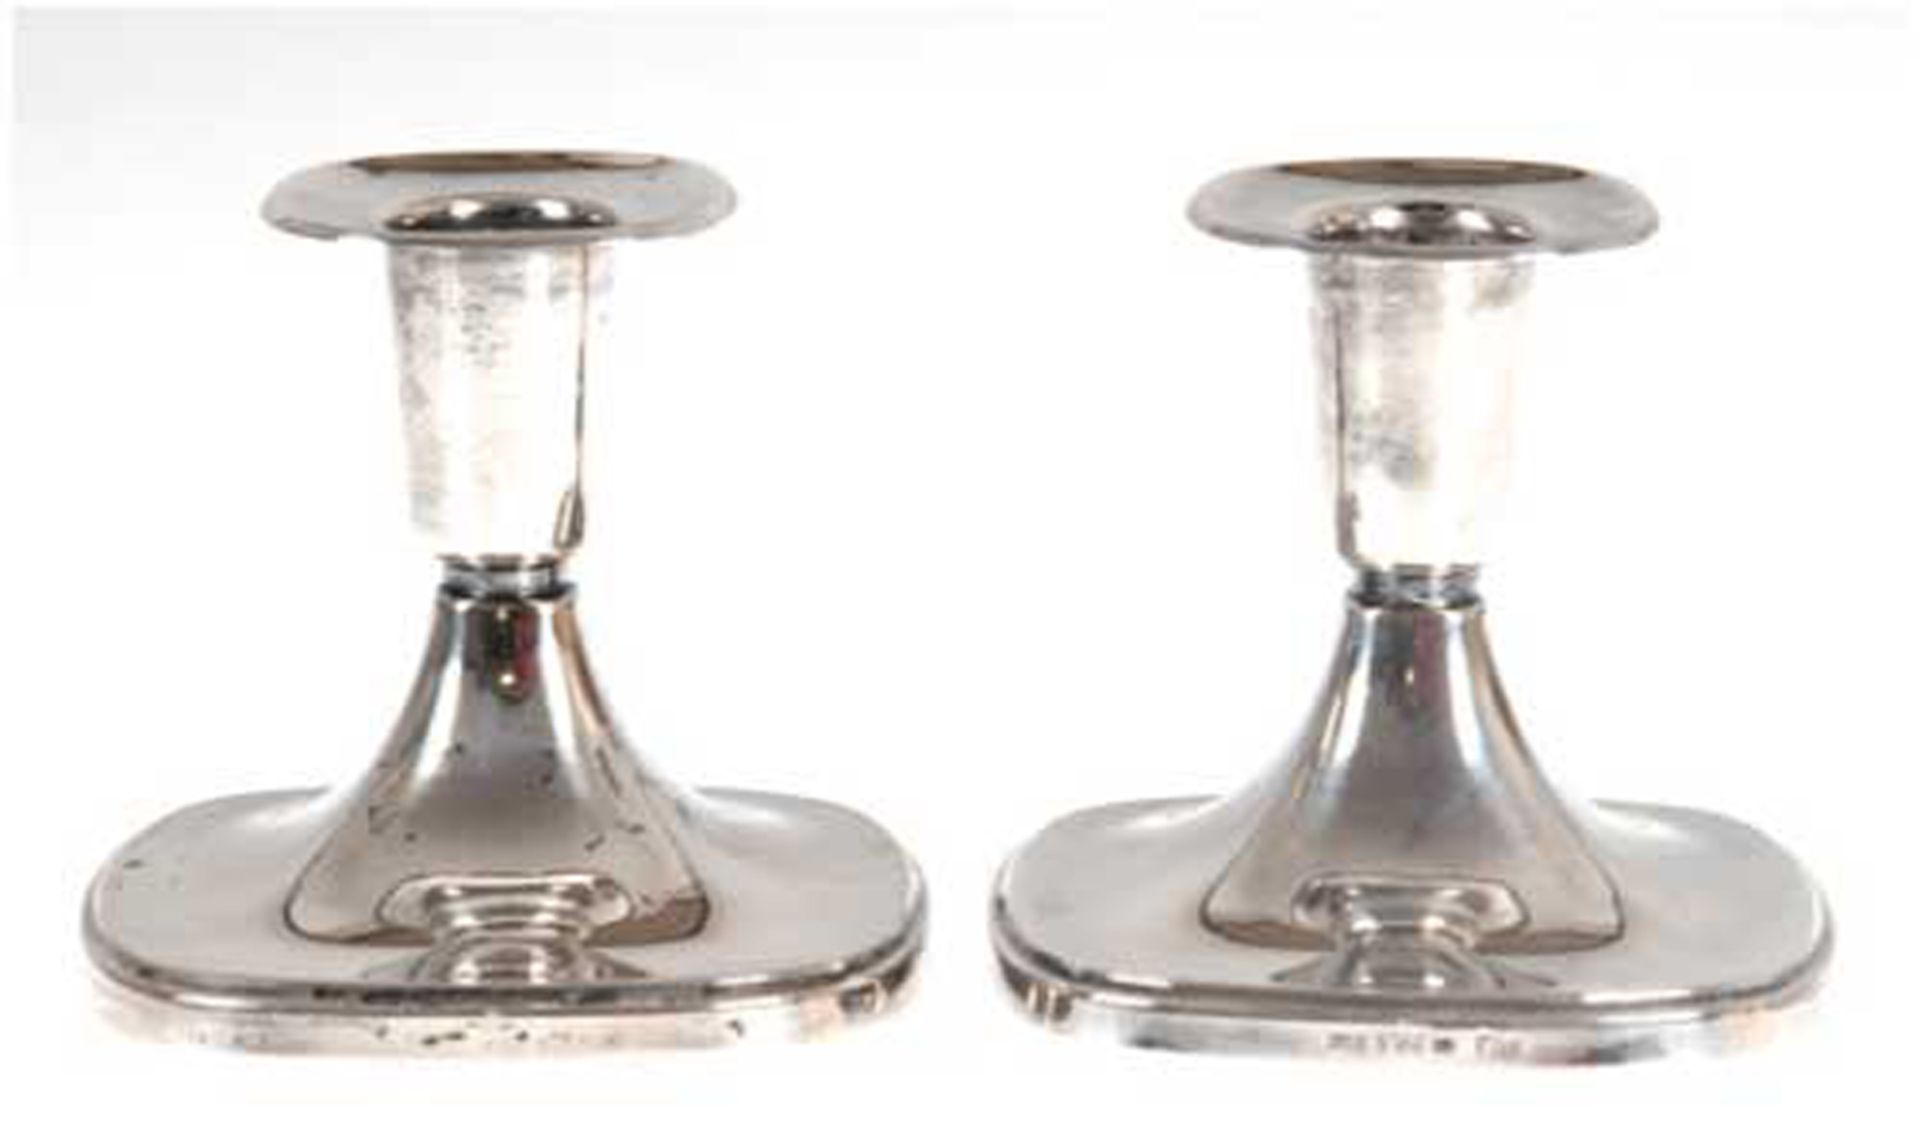 Paar Kerzenhalten, Silber, Schweden 1965, signiert "T. Eloh", Stand gefüllt, quadratischer Fuß und 